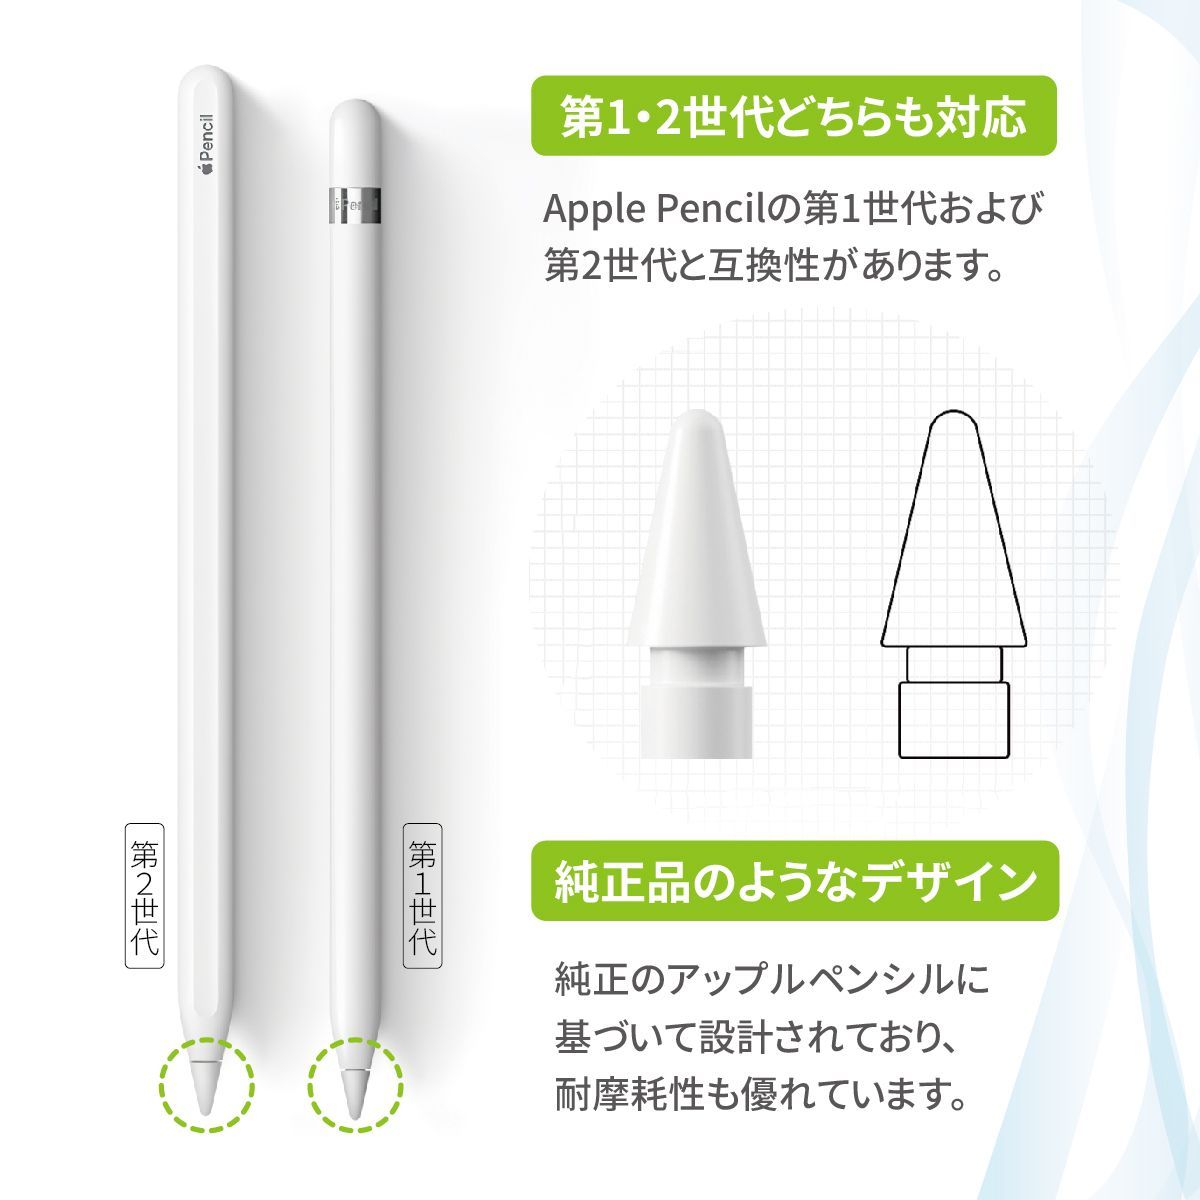 Apple Pencil 第2世代 チップ3個付き - スマホ・タブレット・パソコン